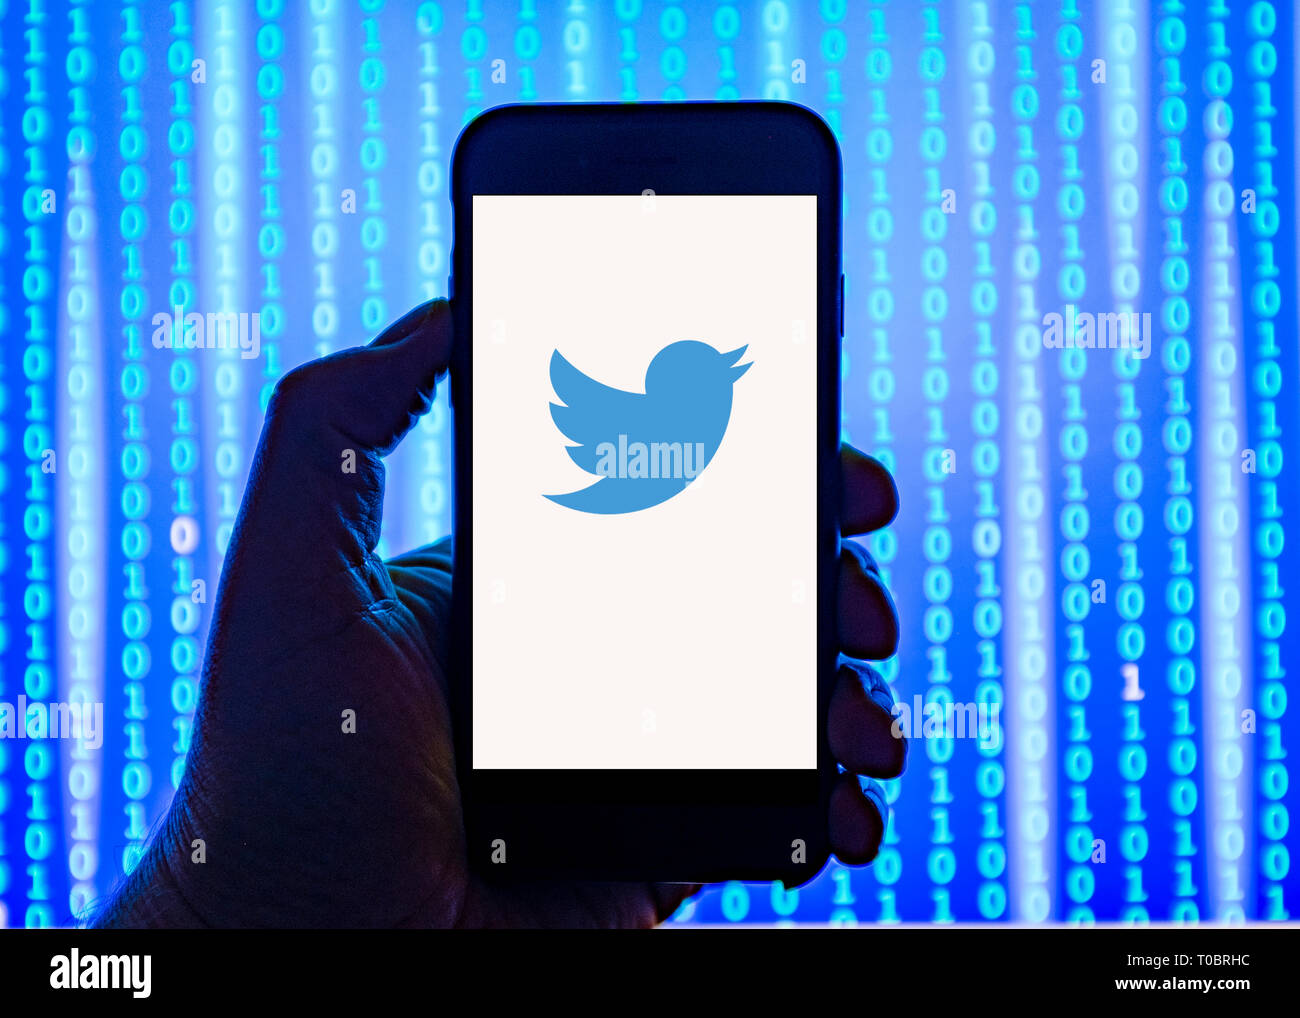 Persona sosteniendo el teléfono inteligente con Twitter Logotipo mostrado en la pantalla. Foto de stock